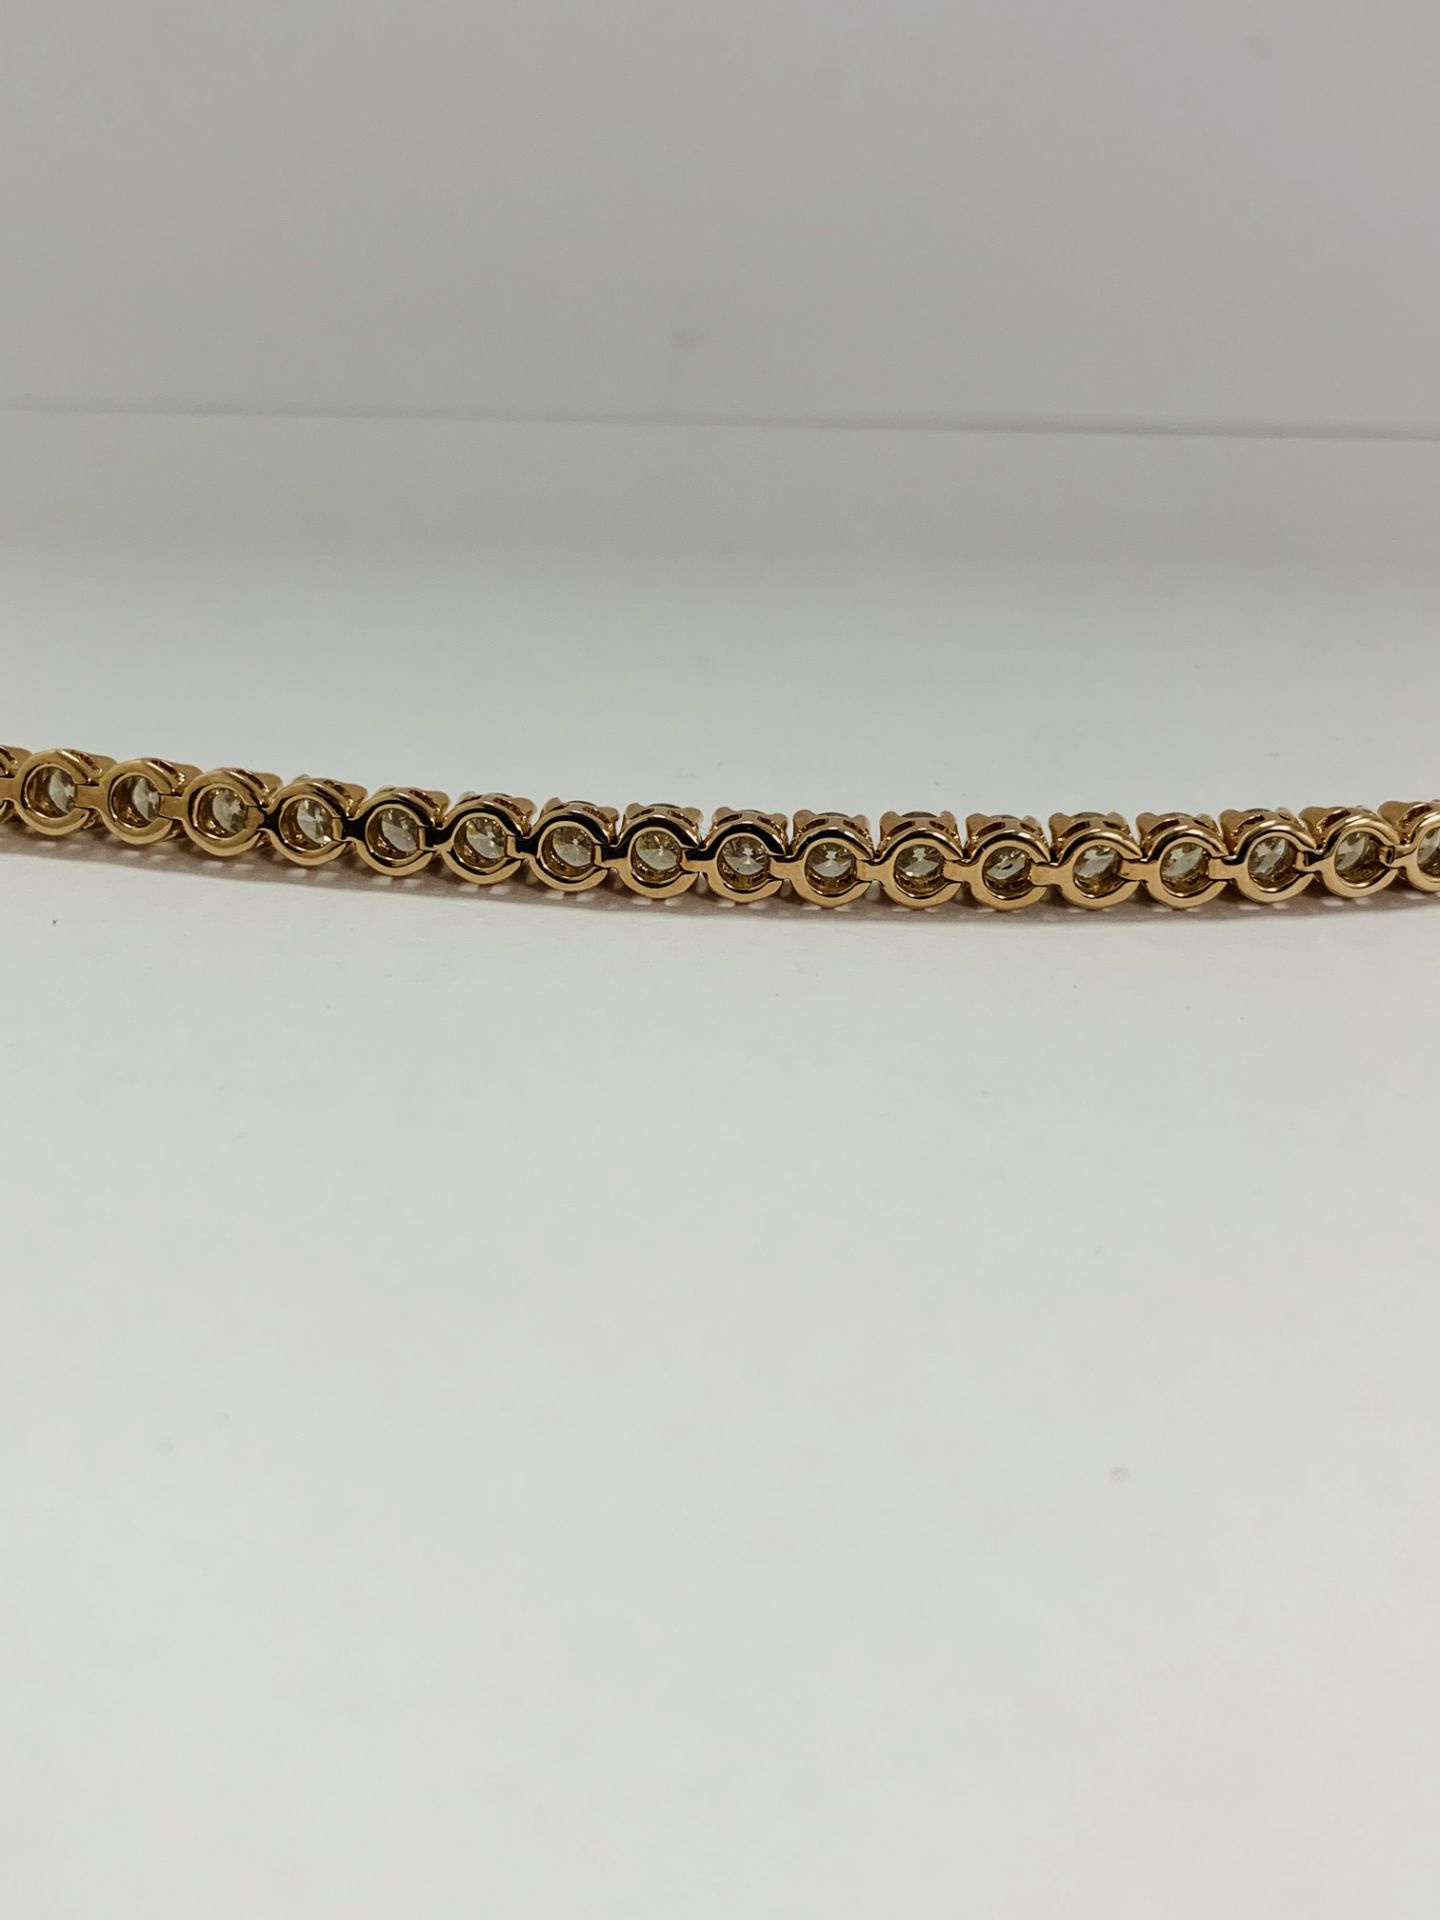 14K Rose Gold Bracelet - Image 9 of 20